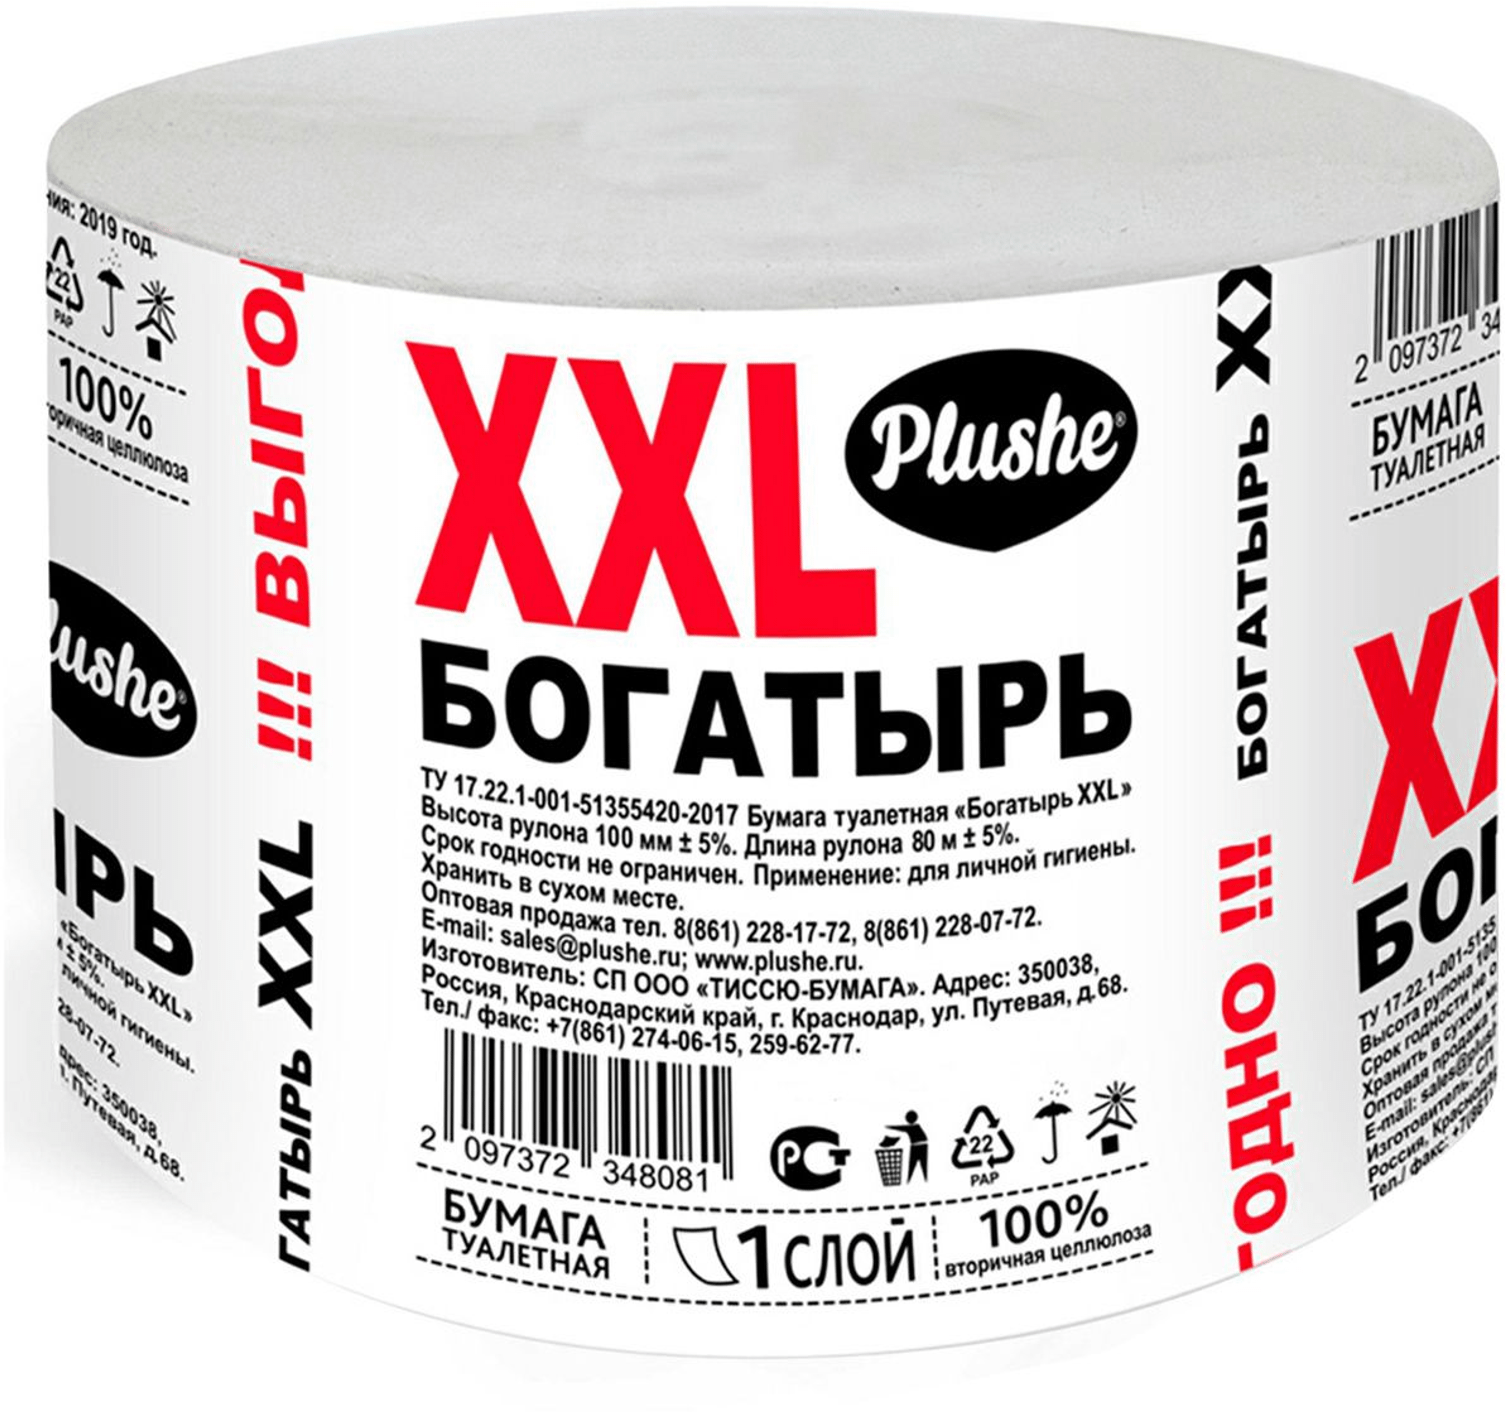 Туалетная бумага Plushe Эко Богатырь XXL, 1 упак